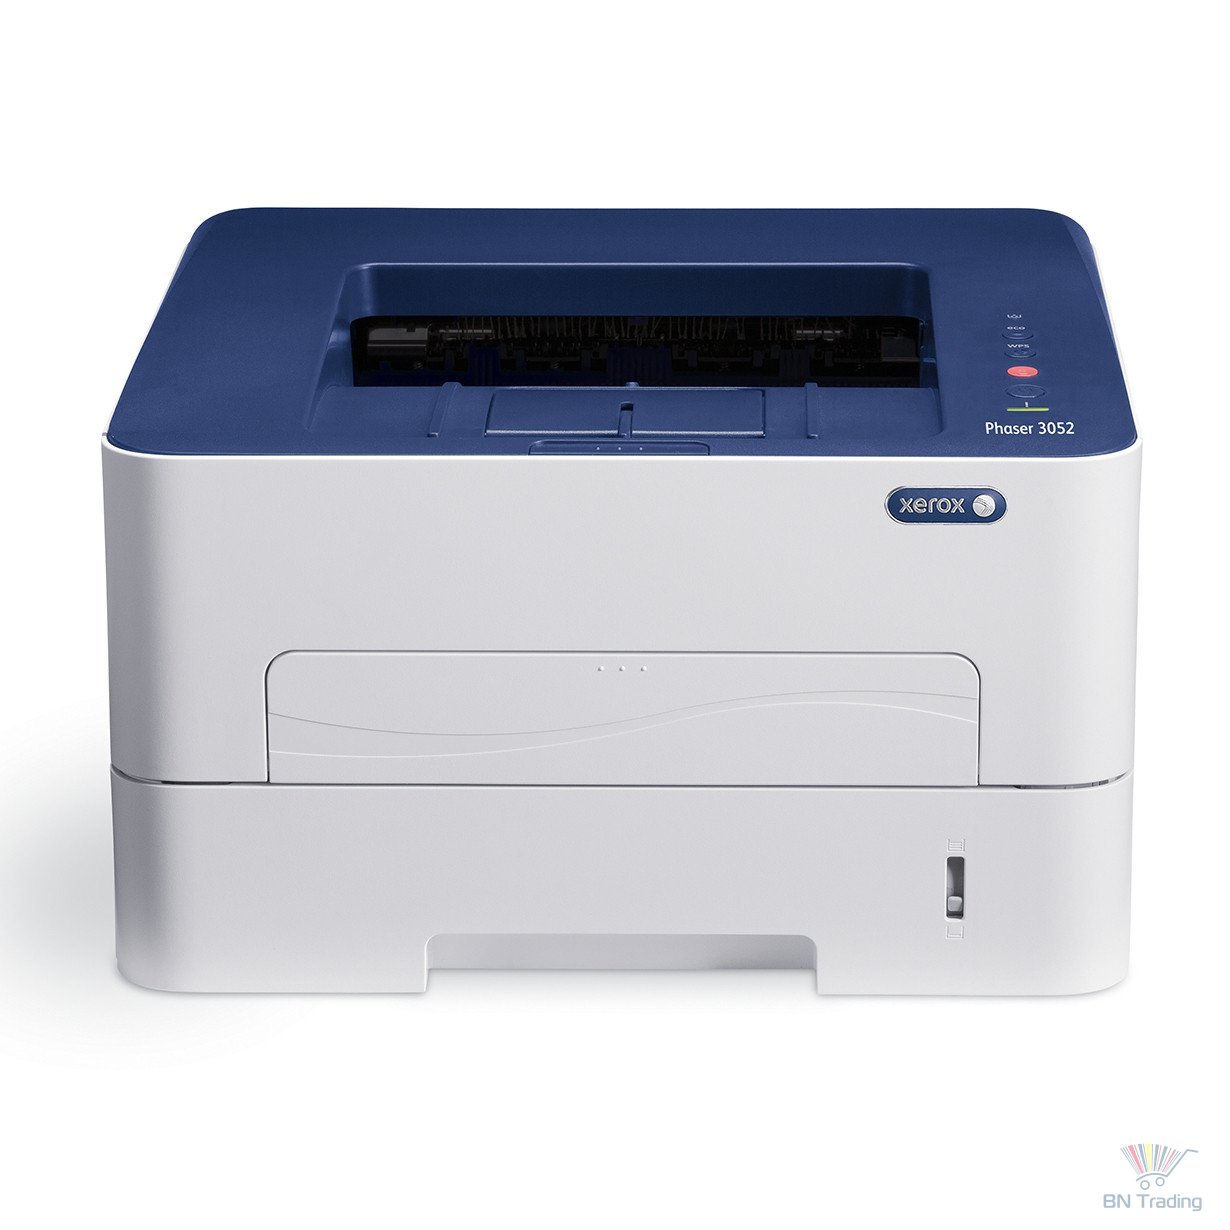 Принтер купить ситилинк. Xerox Phaser 3020. Принтер Xerox Phaser 3052v_ni. Принтер Xerox Phaser 3020v_bi. Принтер Xerox b210v_dni.